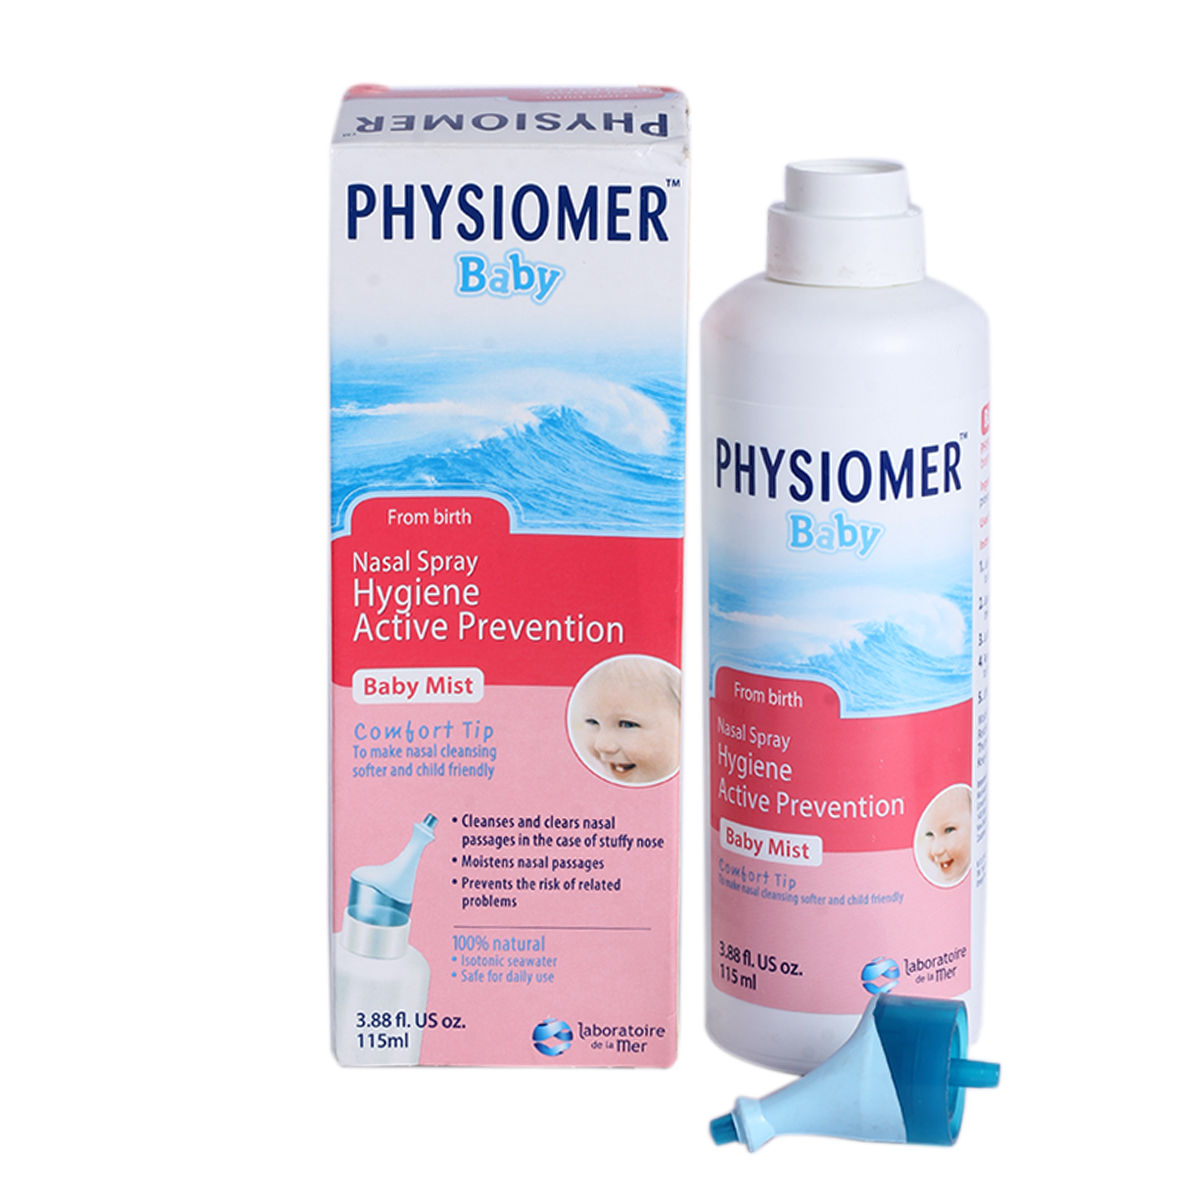 Physiomer Babymist Nasal Spray 115 ml, Pack of 1 